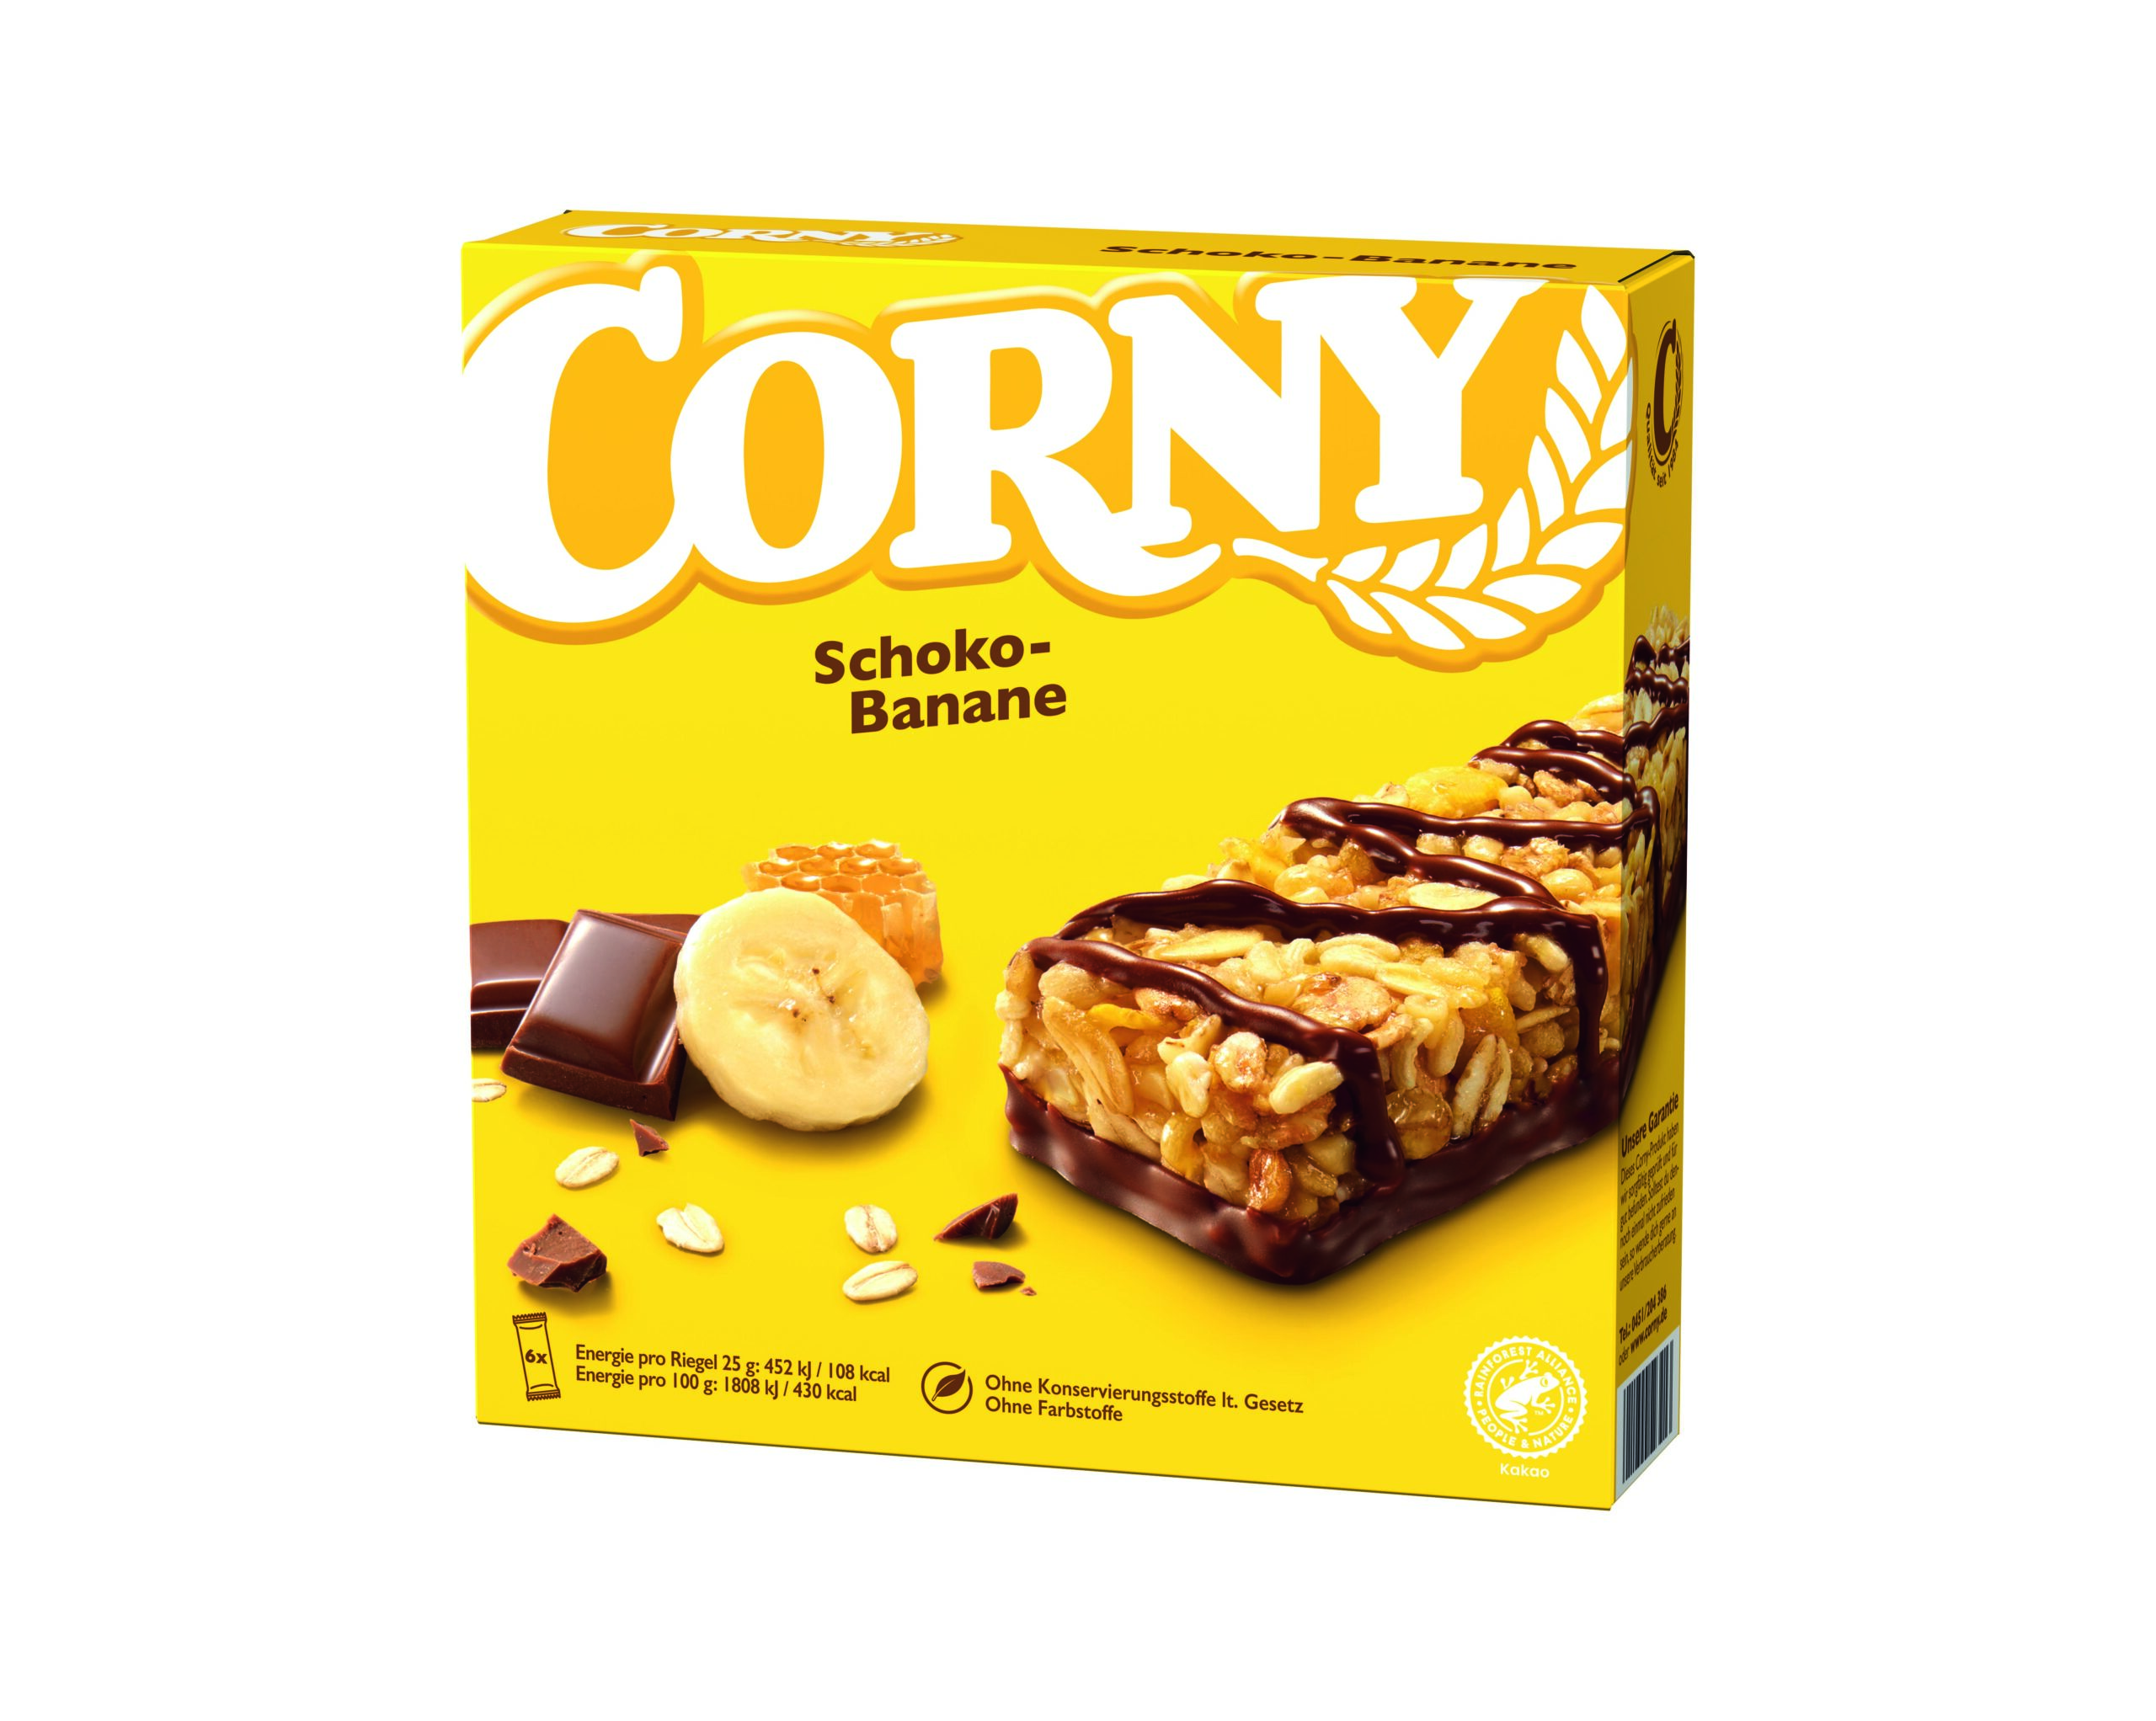 Corny Classic Schoko-Banane 6x25g Packung